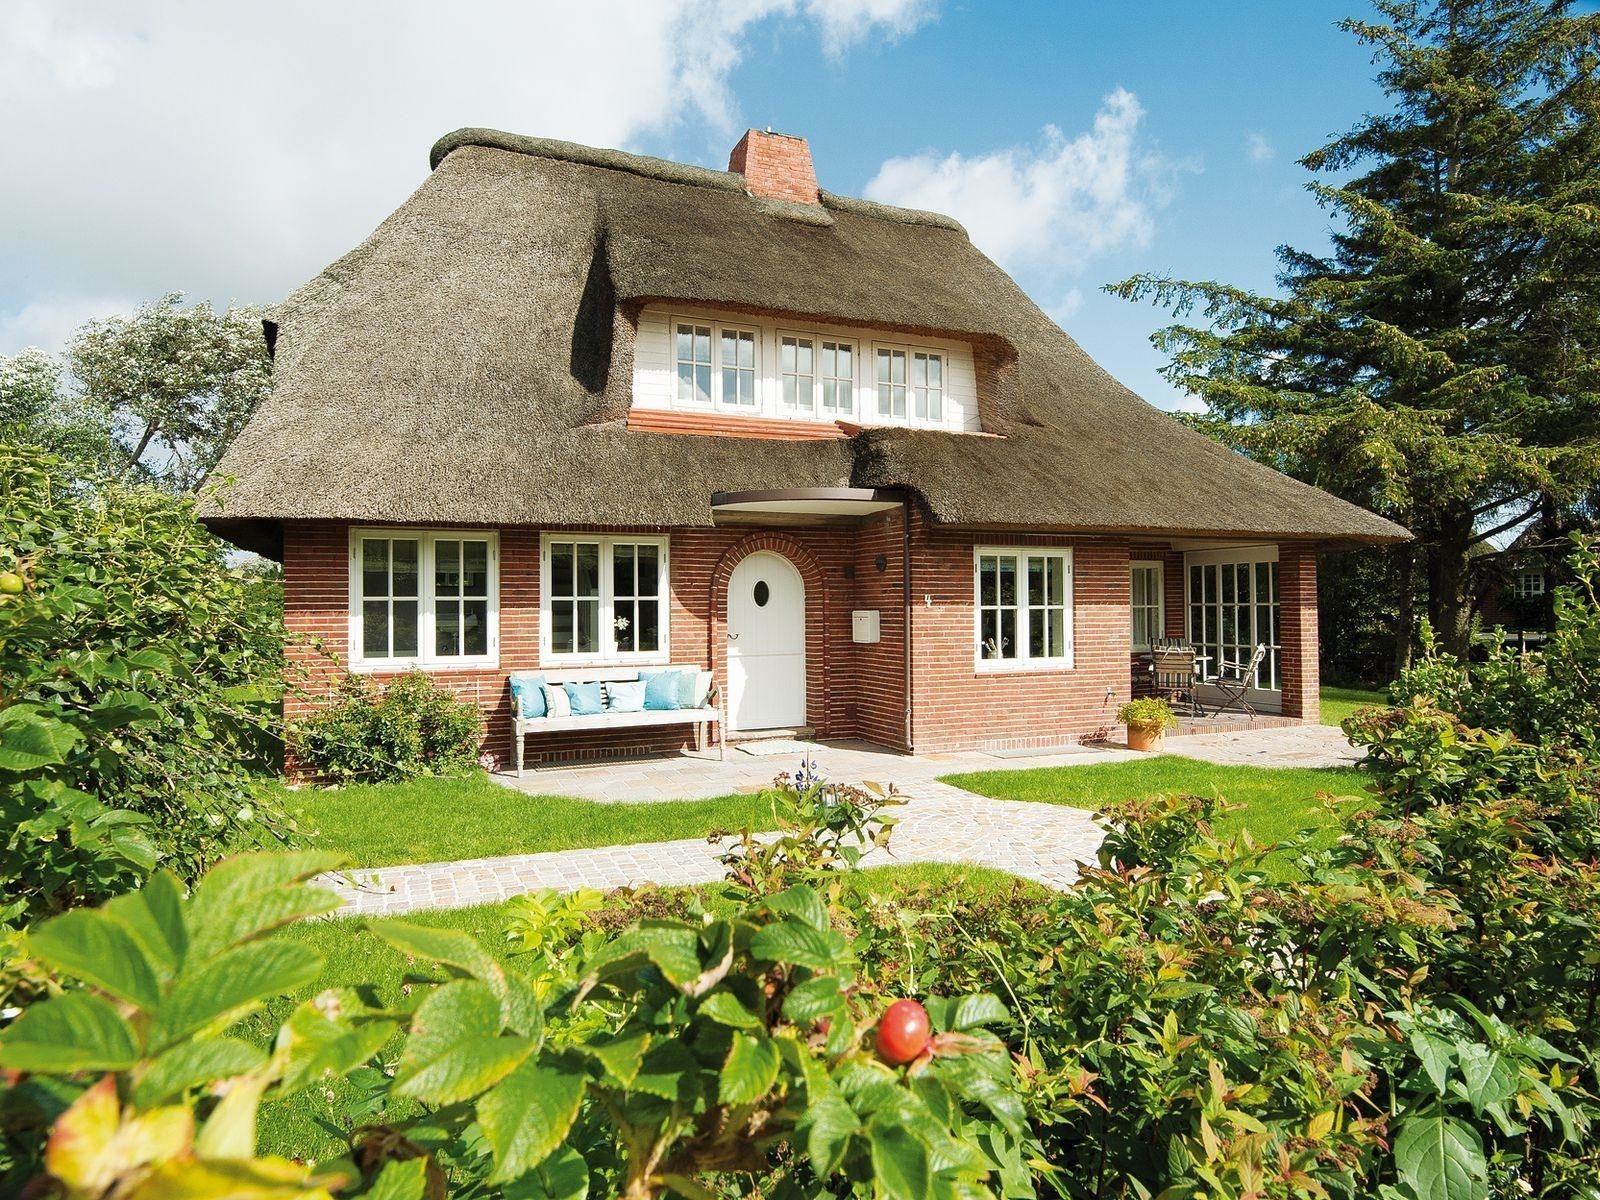 Min Go Ferienhaus in Schleswig Holstein